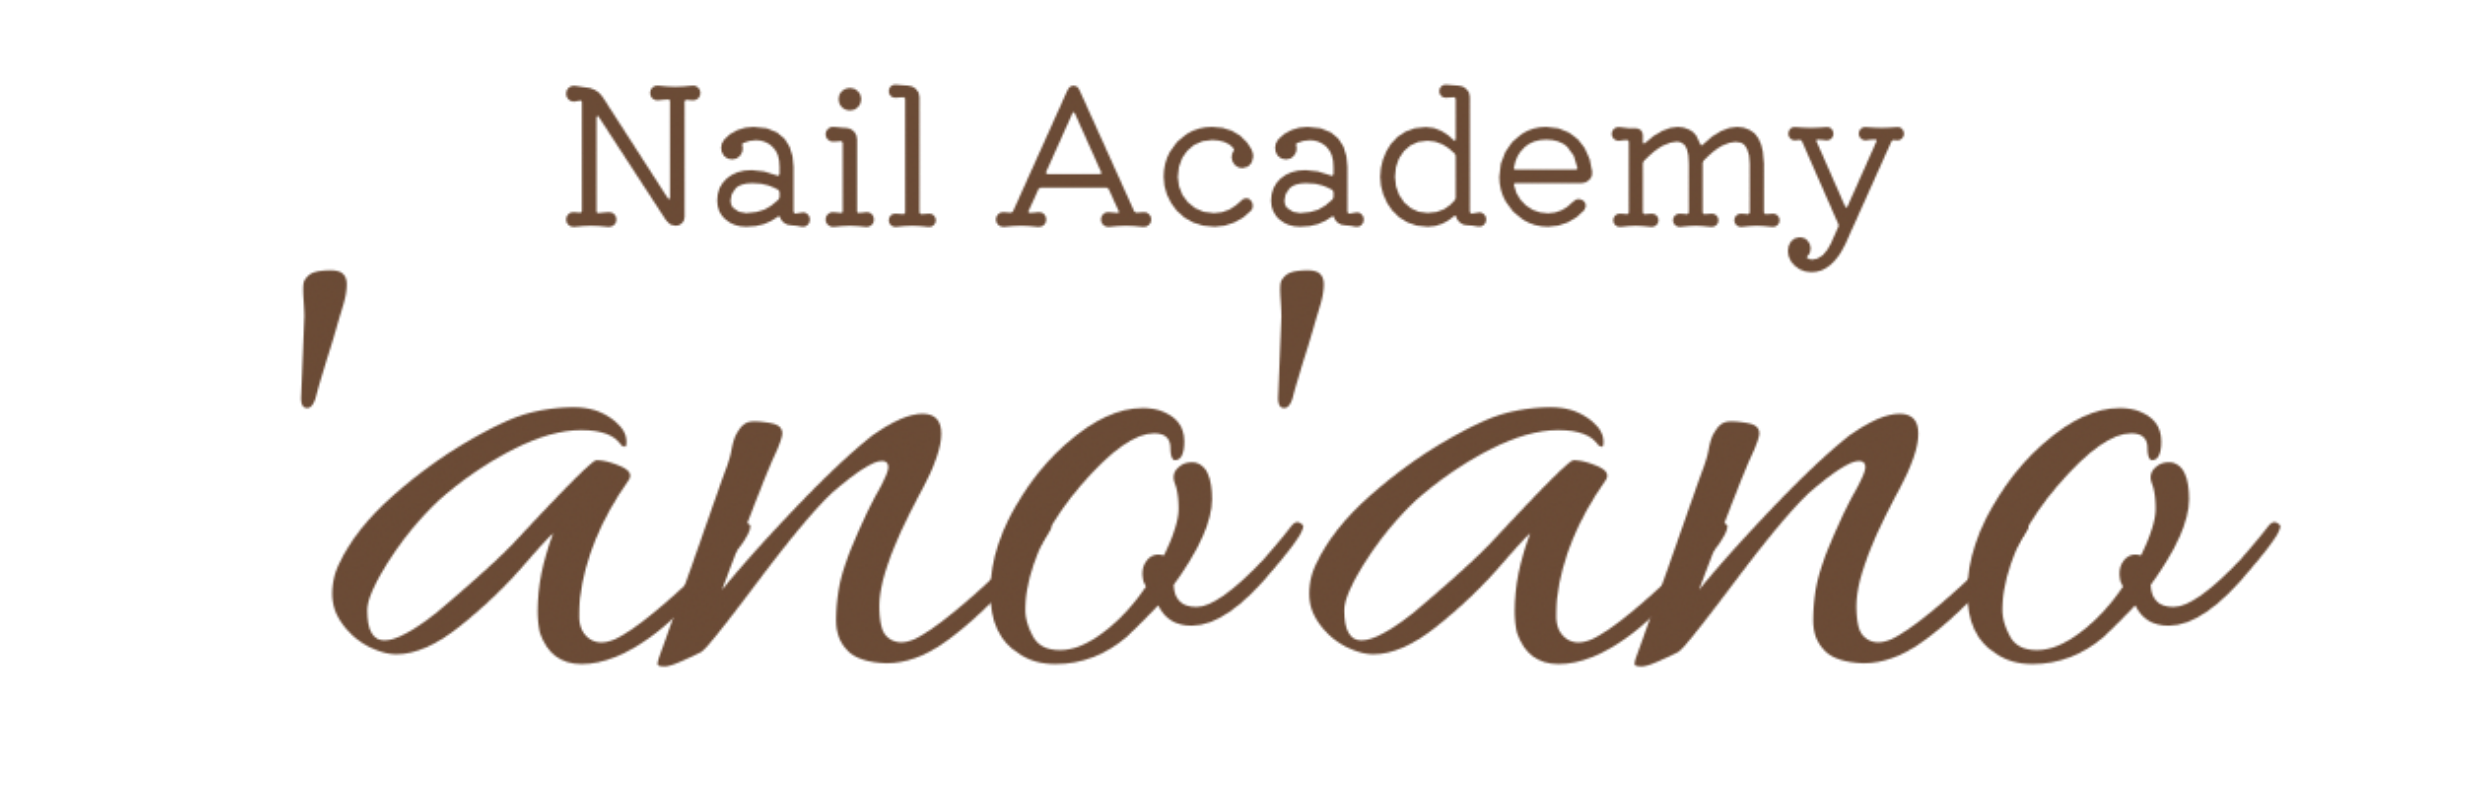 Nail Academy ’ano’ano